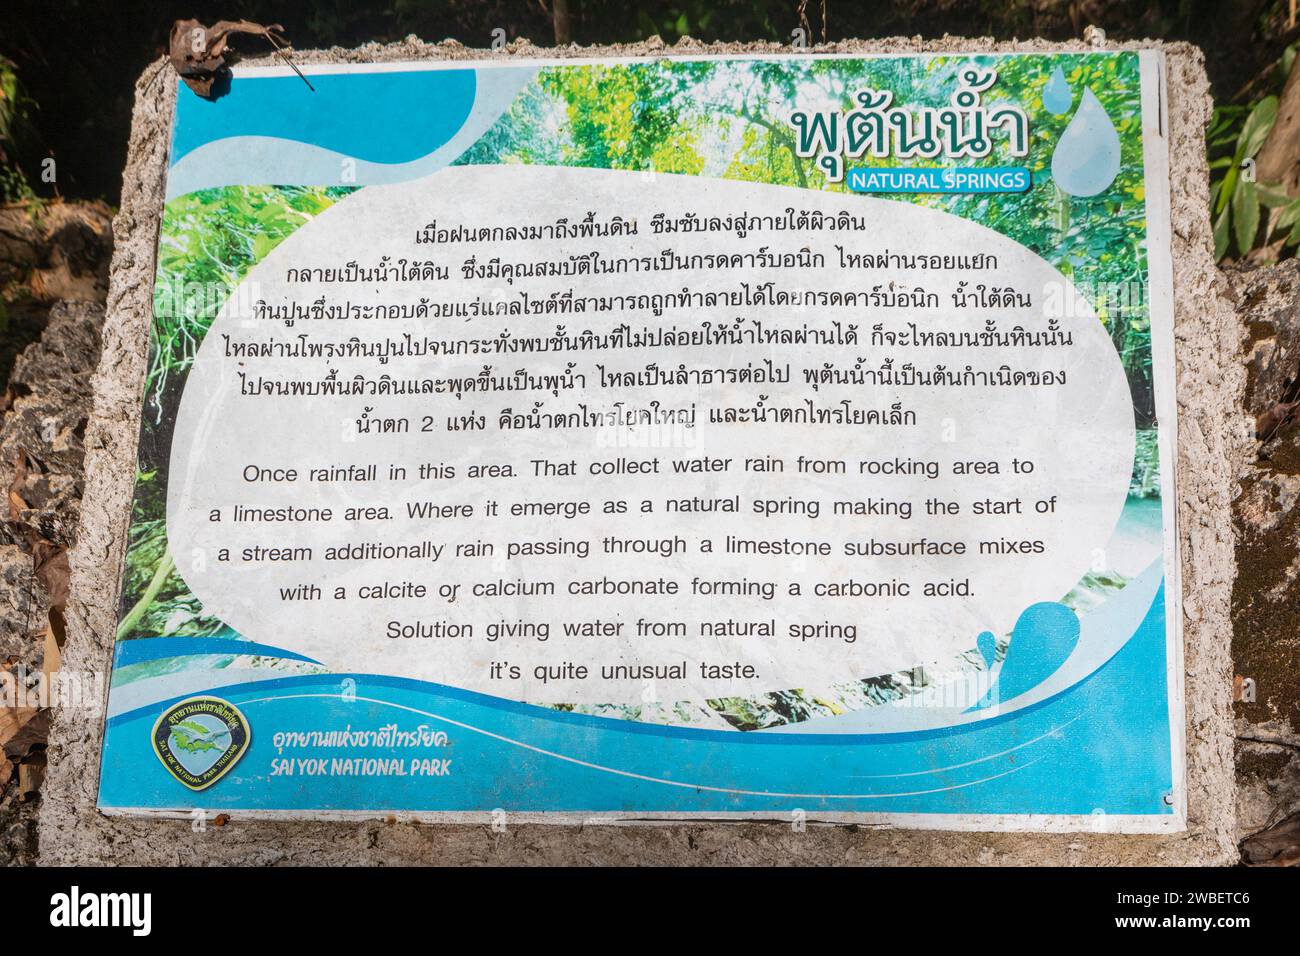 L'insegna alle sorgenti naturali di Sai Yok nel Parco nazionale di Sai Yok, Kanchanaburi, Thailandia. Foto Stock